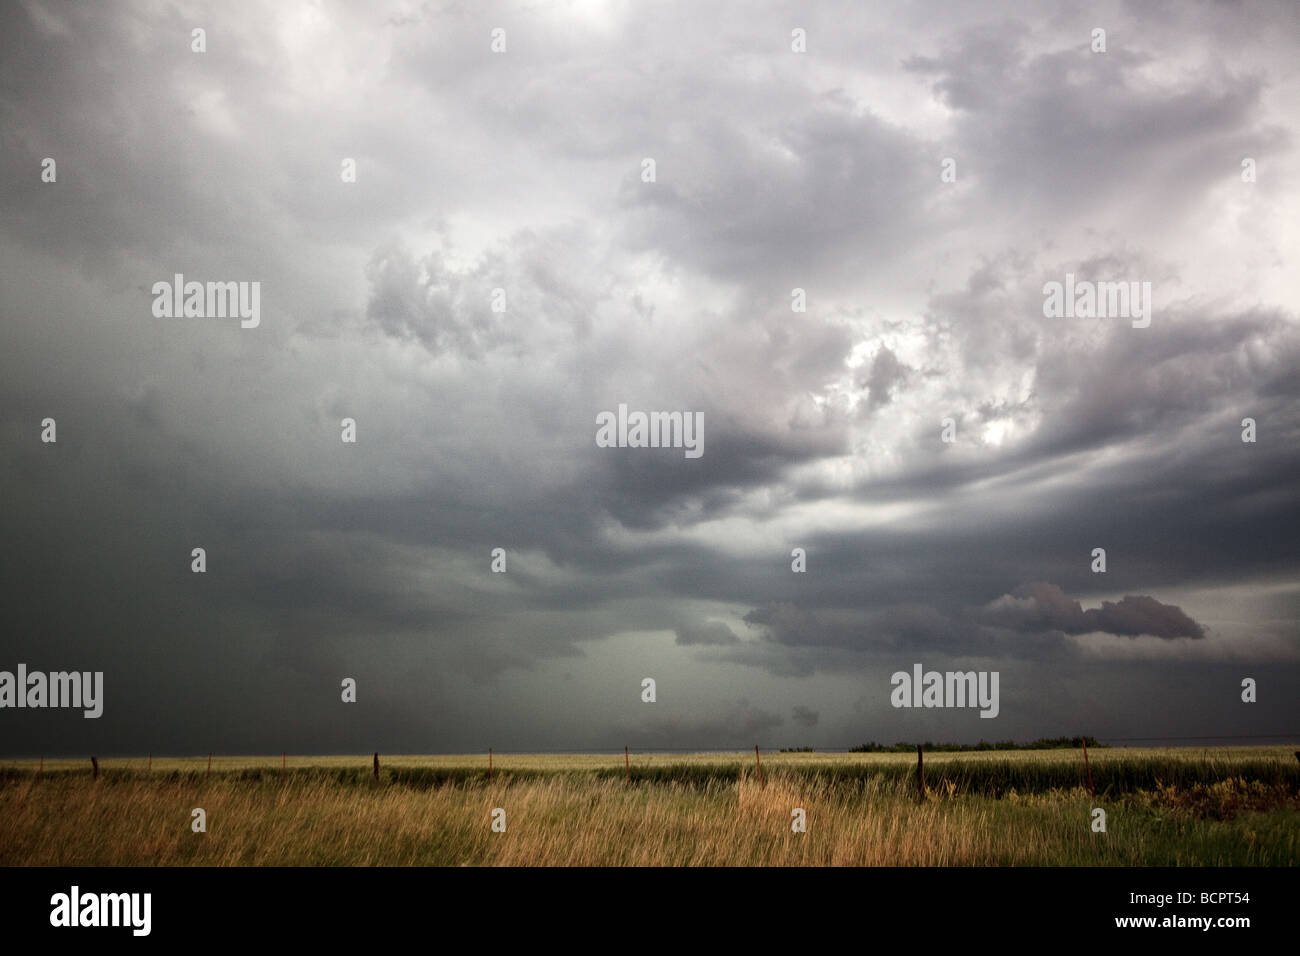 Dunkle Wolken über Präriegras Schuss während Projekt Vortex 2 Projekt Vortex 2 Stockfoto